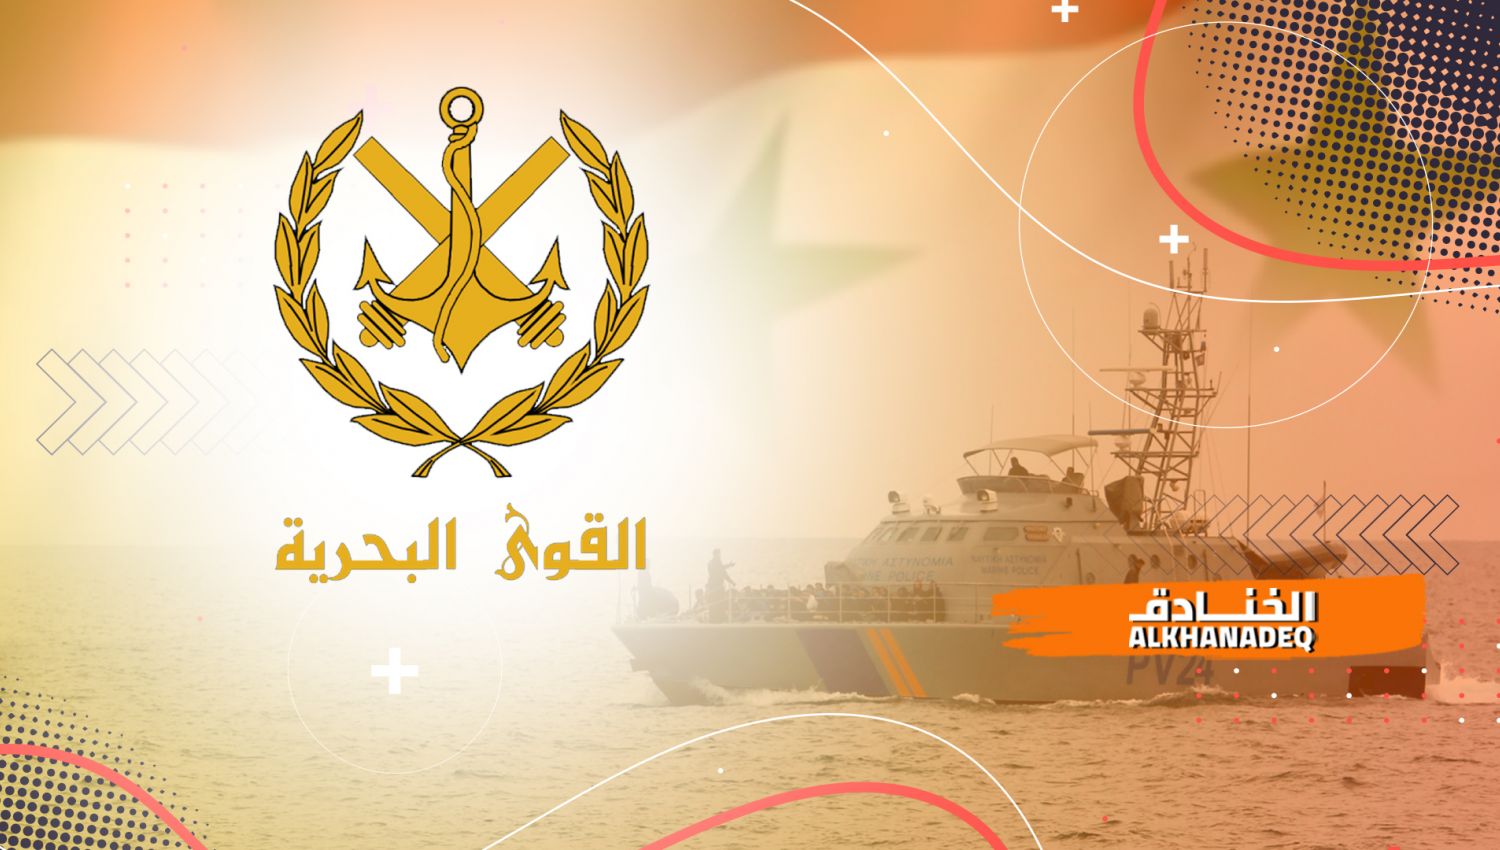 القوات البحرية السورية